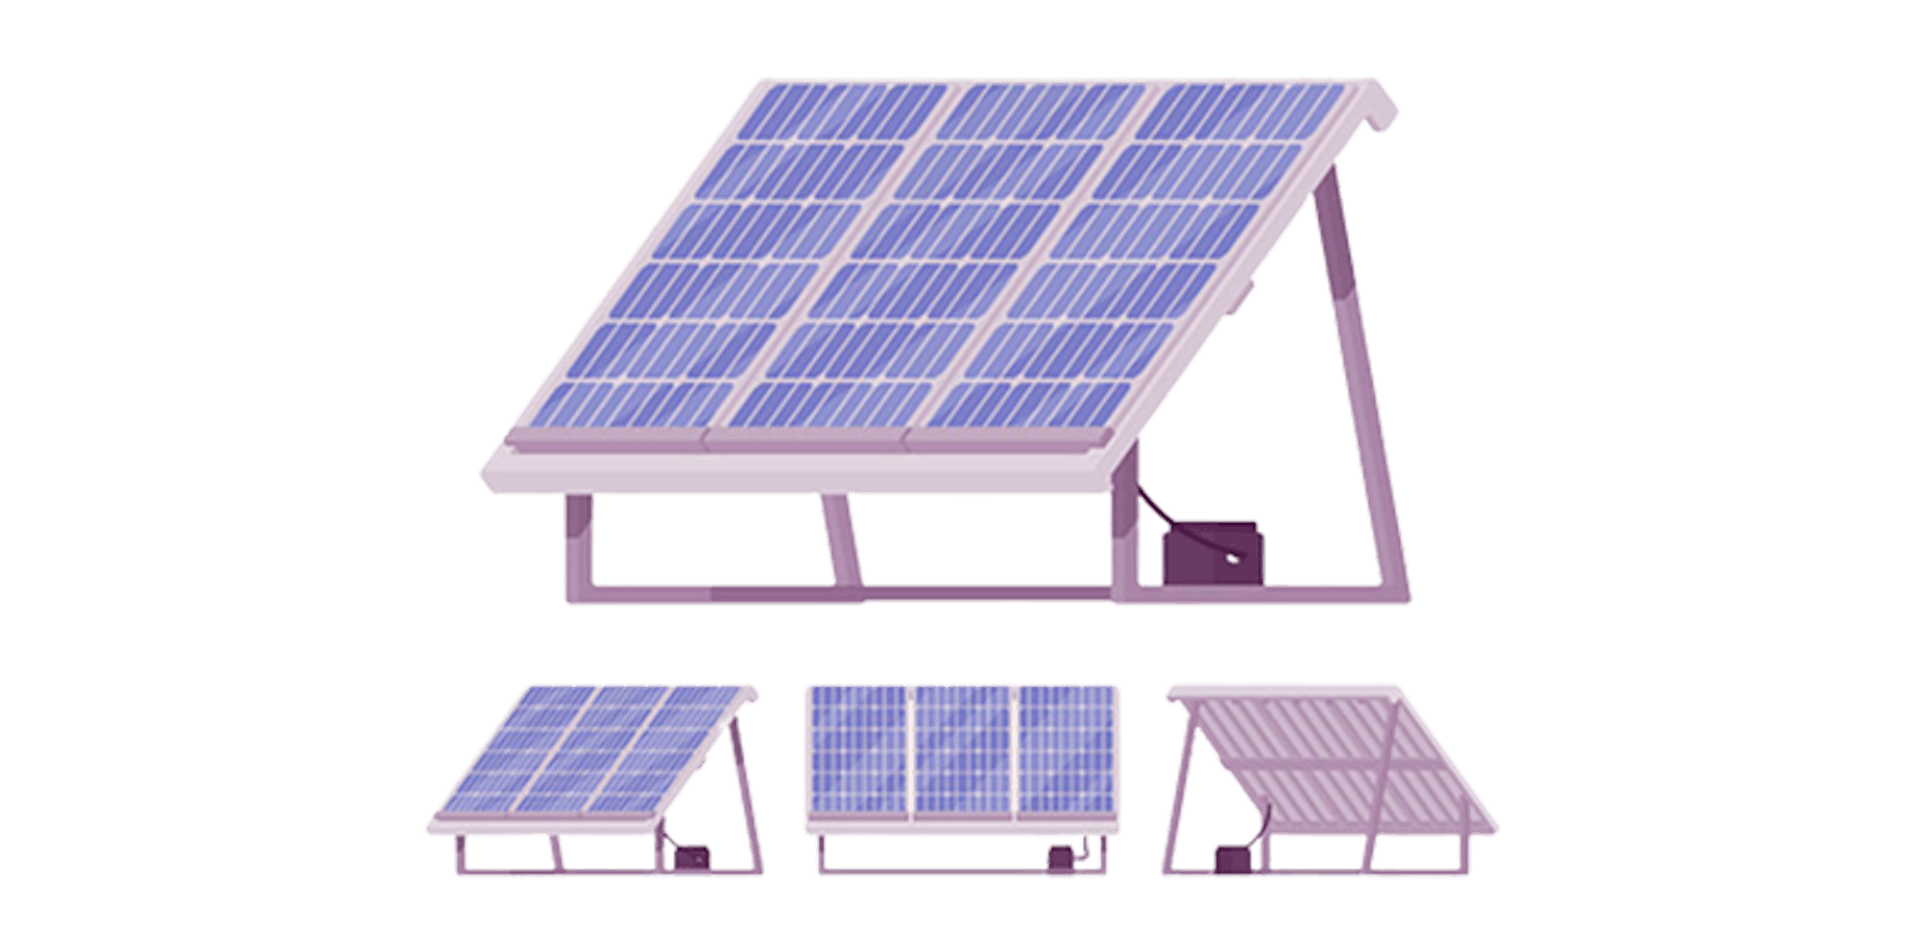 Retour sur le kit solaire ekwateur: le kit photovoltaique proposé